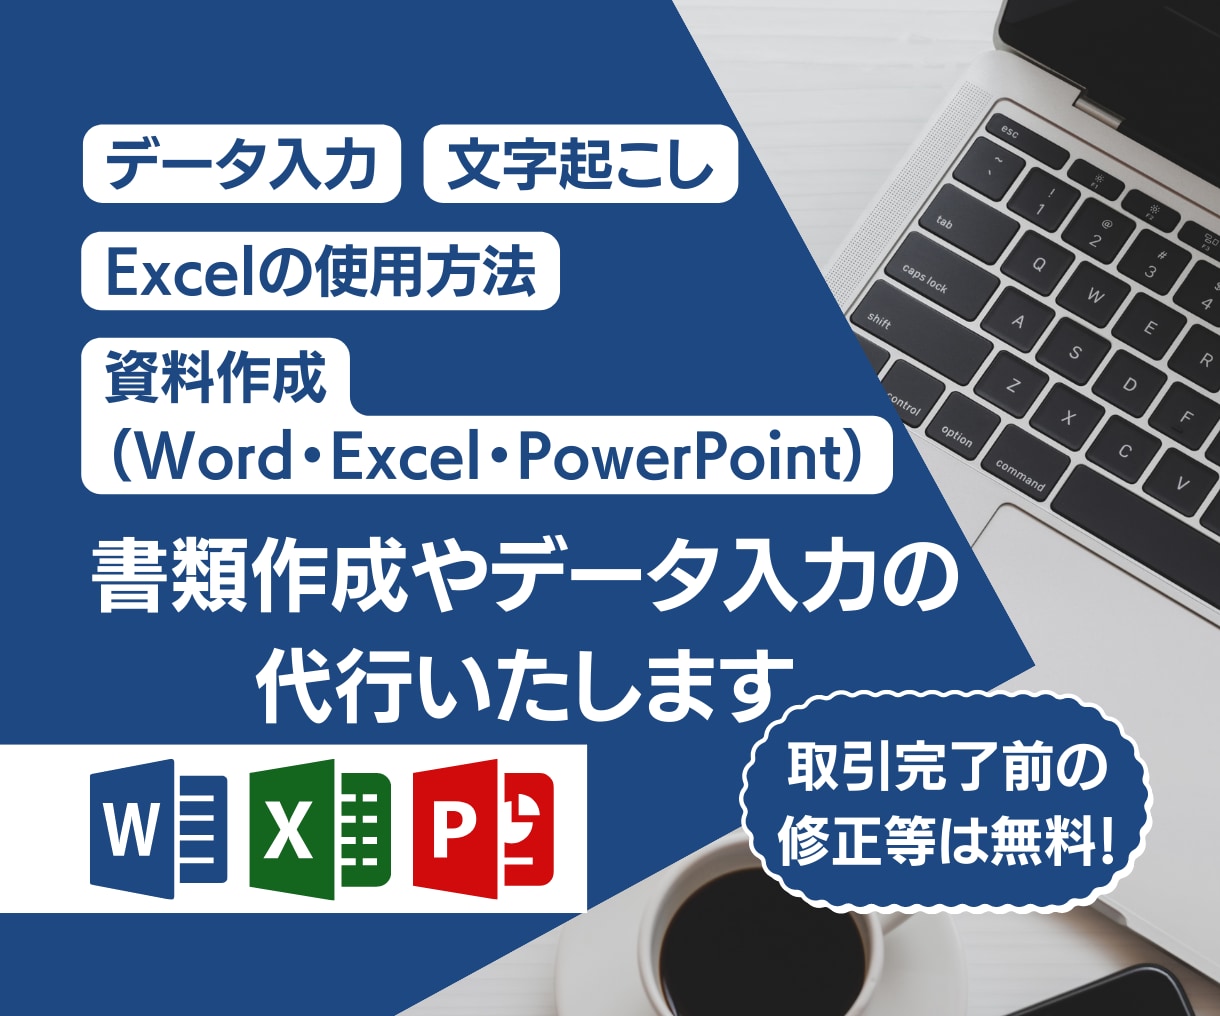 💬ココナラ｜Word・Excelの入力作業や綺麗な表を作ります   Mandaring Support  
                5.0
  …